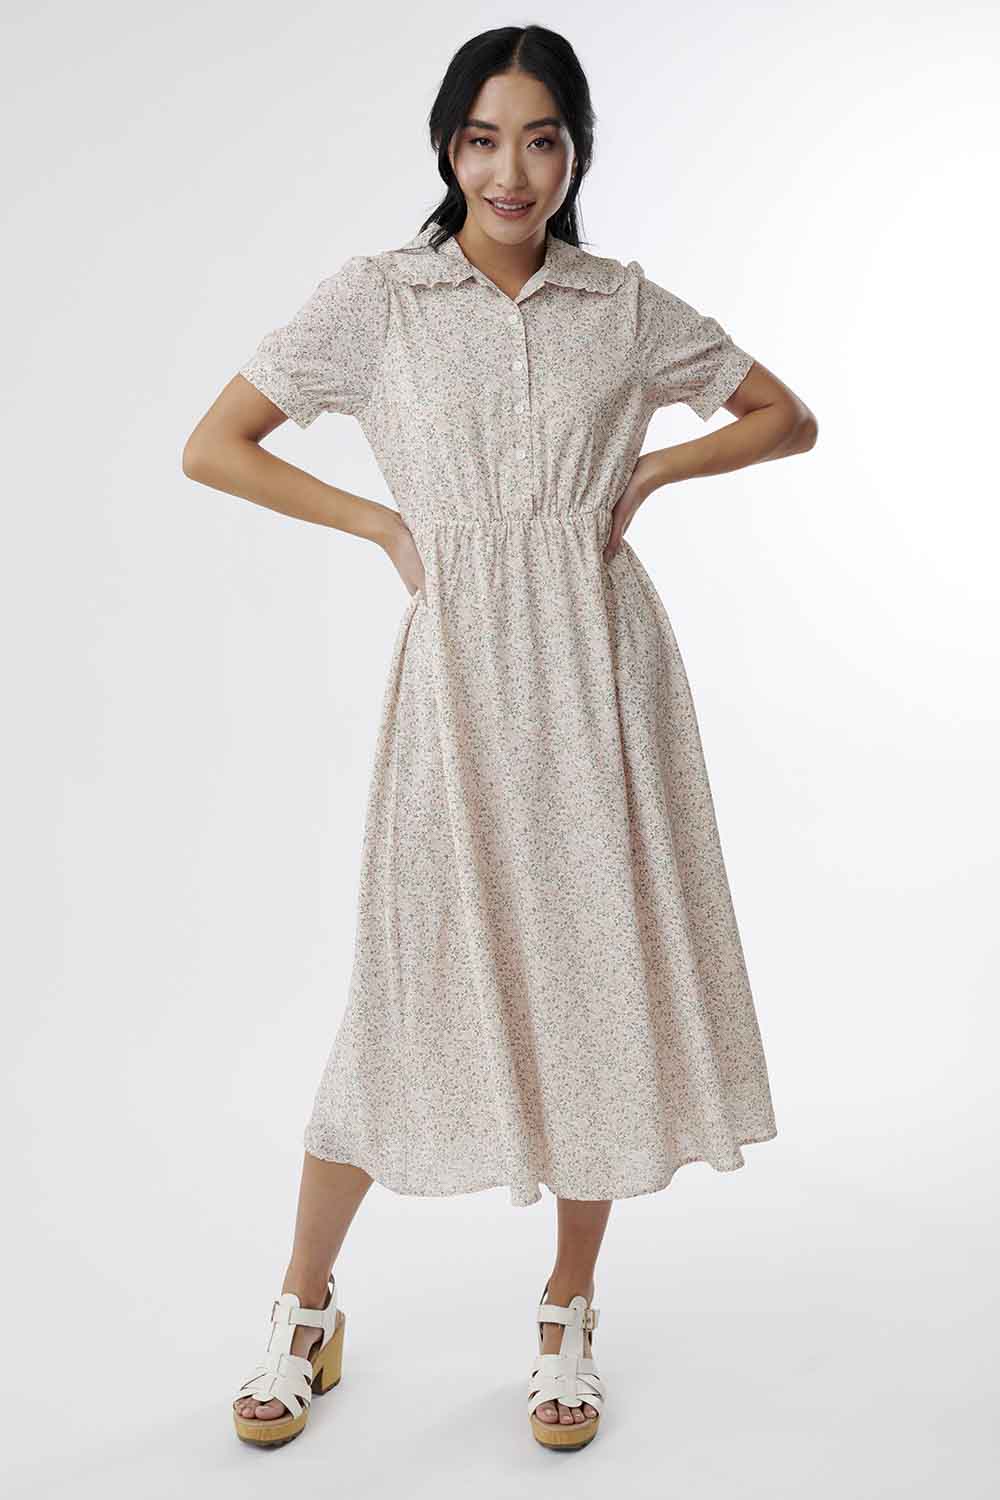 peter pan collar button down dress, modest dress for nursing moms, modest dresses